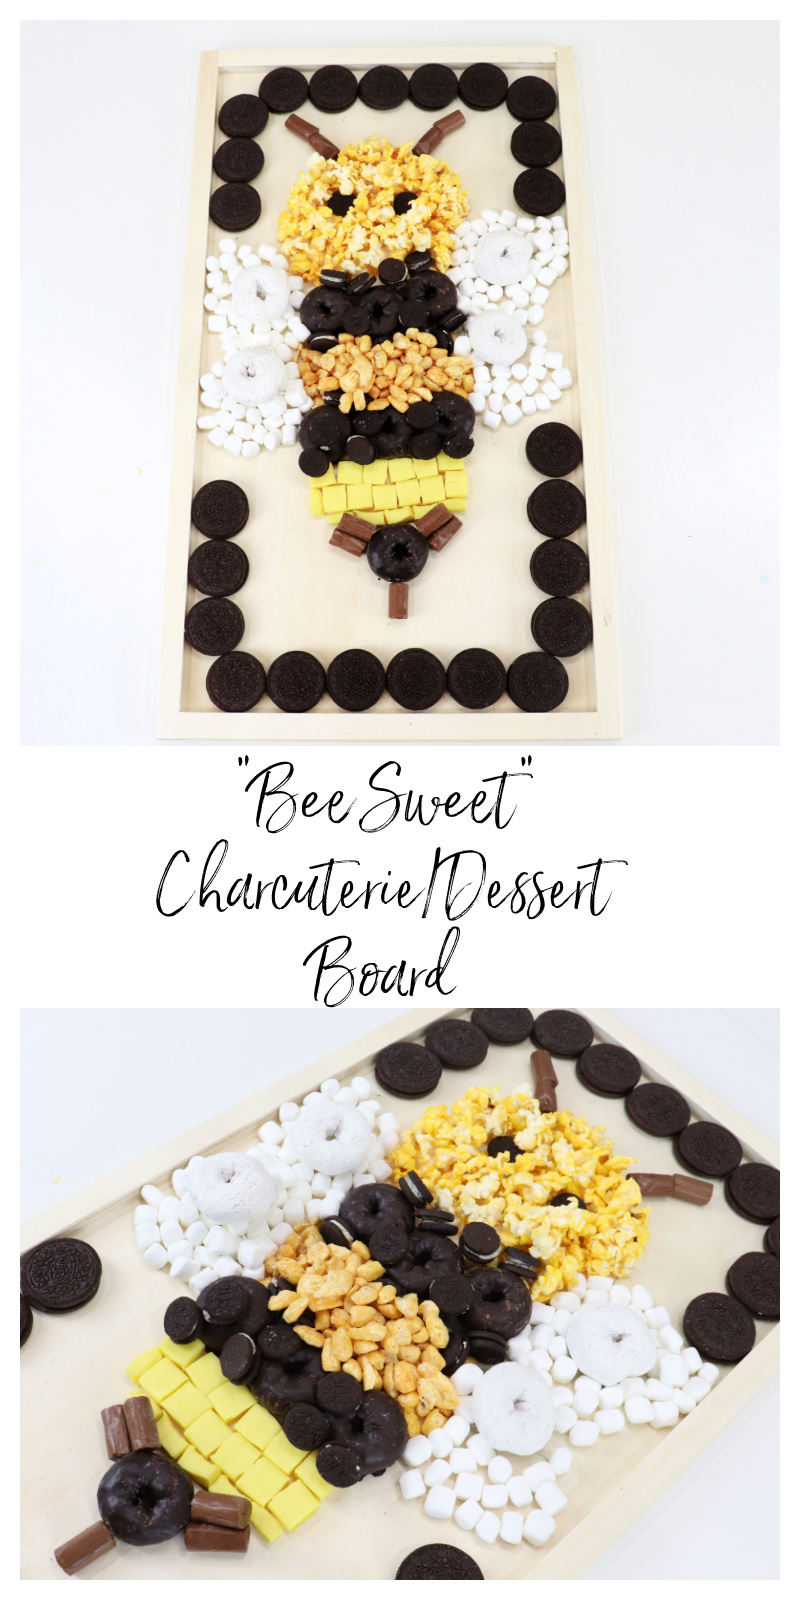 "Bee Sweet" Charcuterie Dessert Board